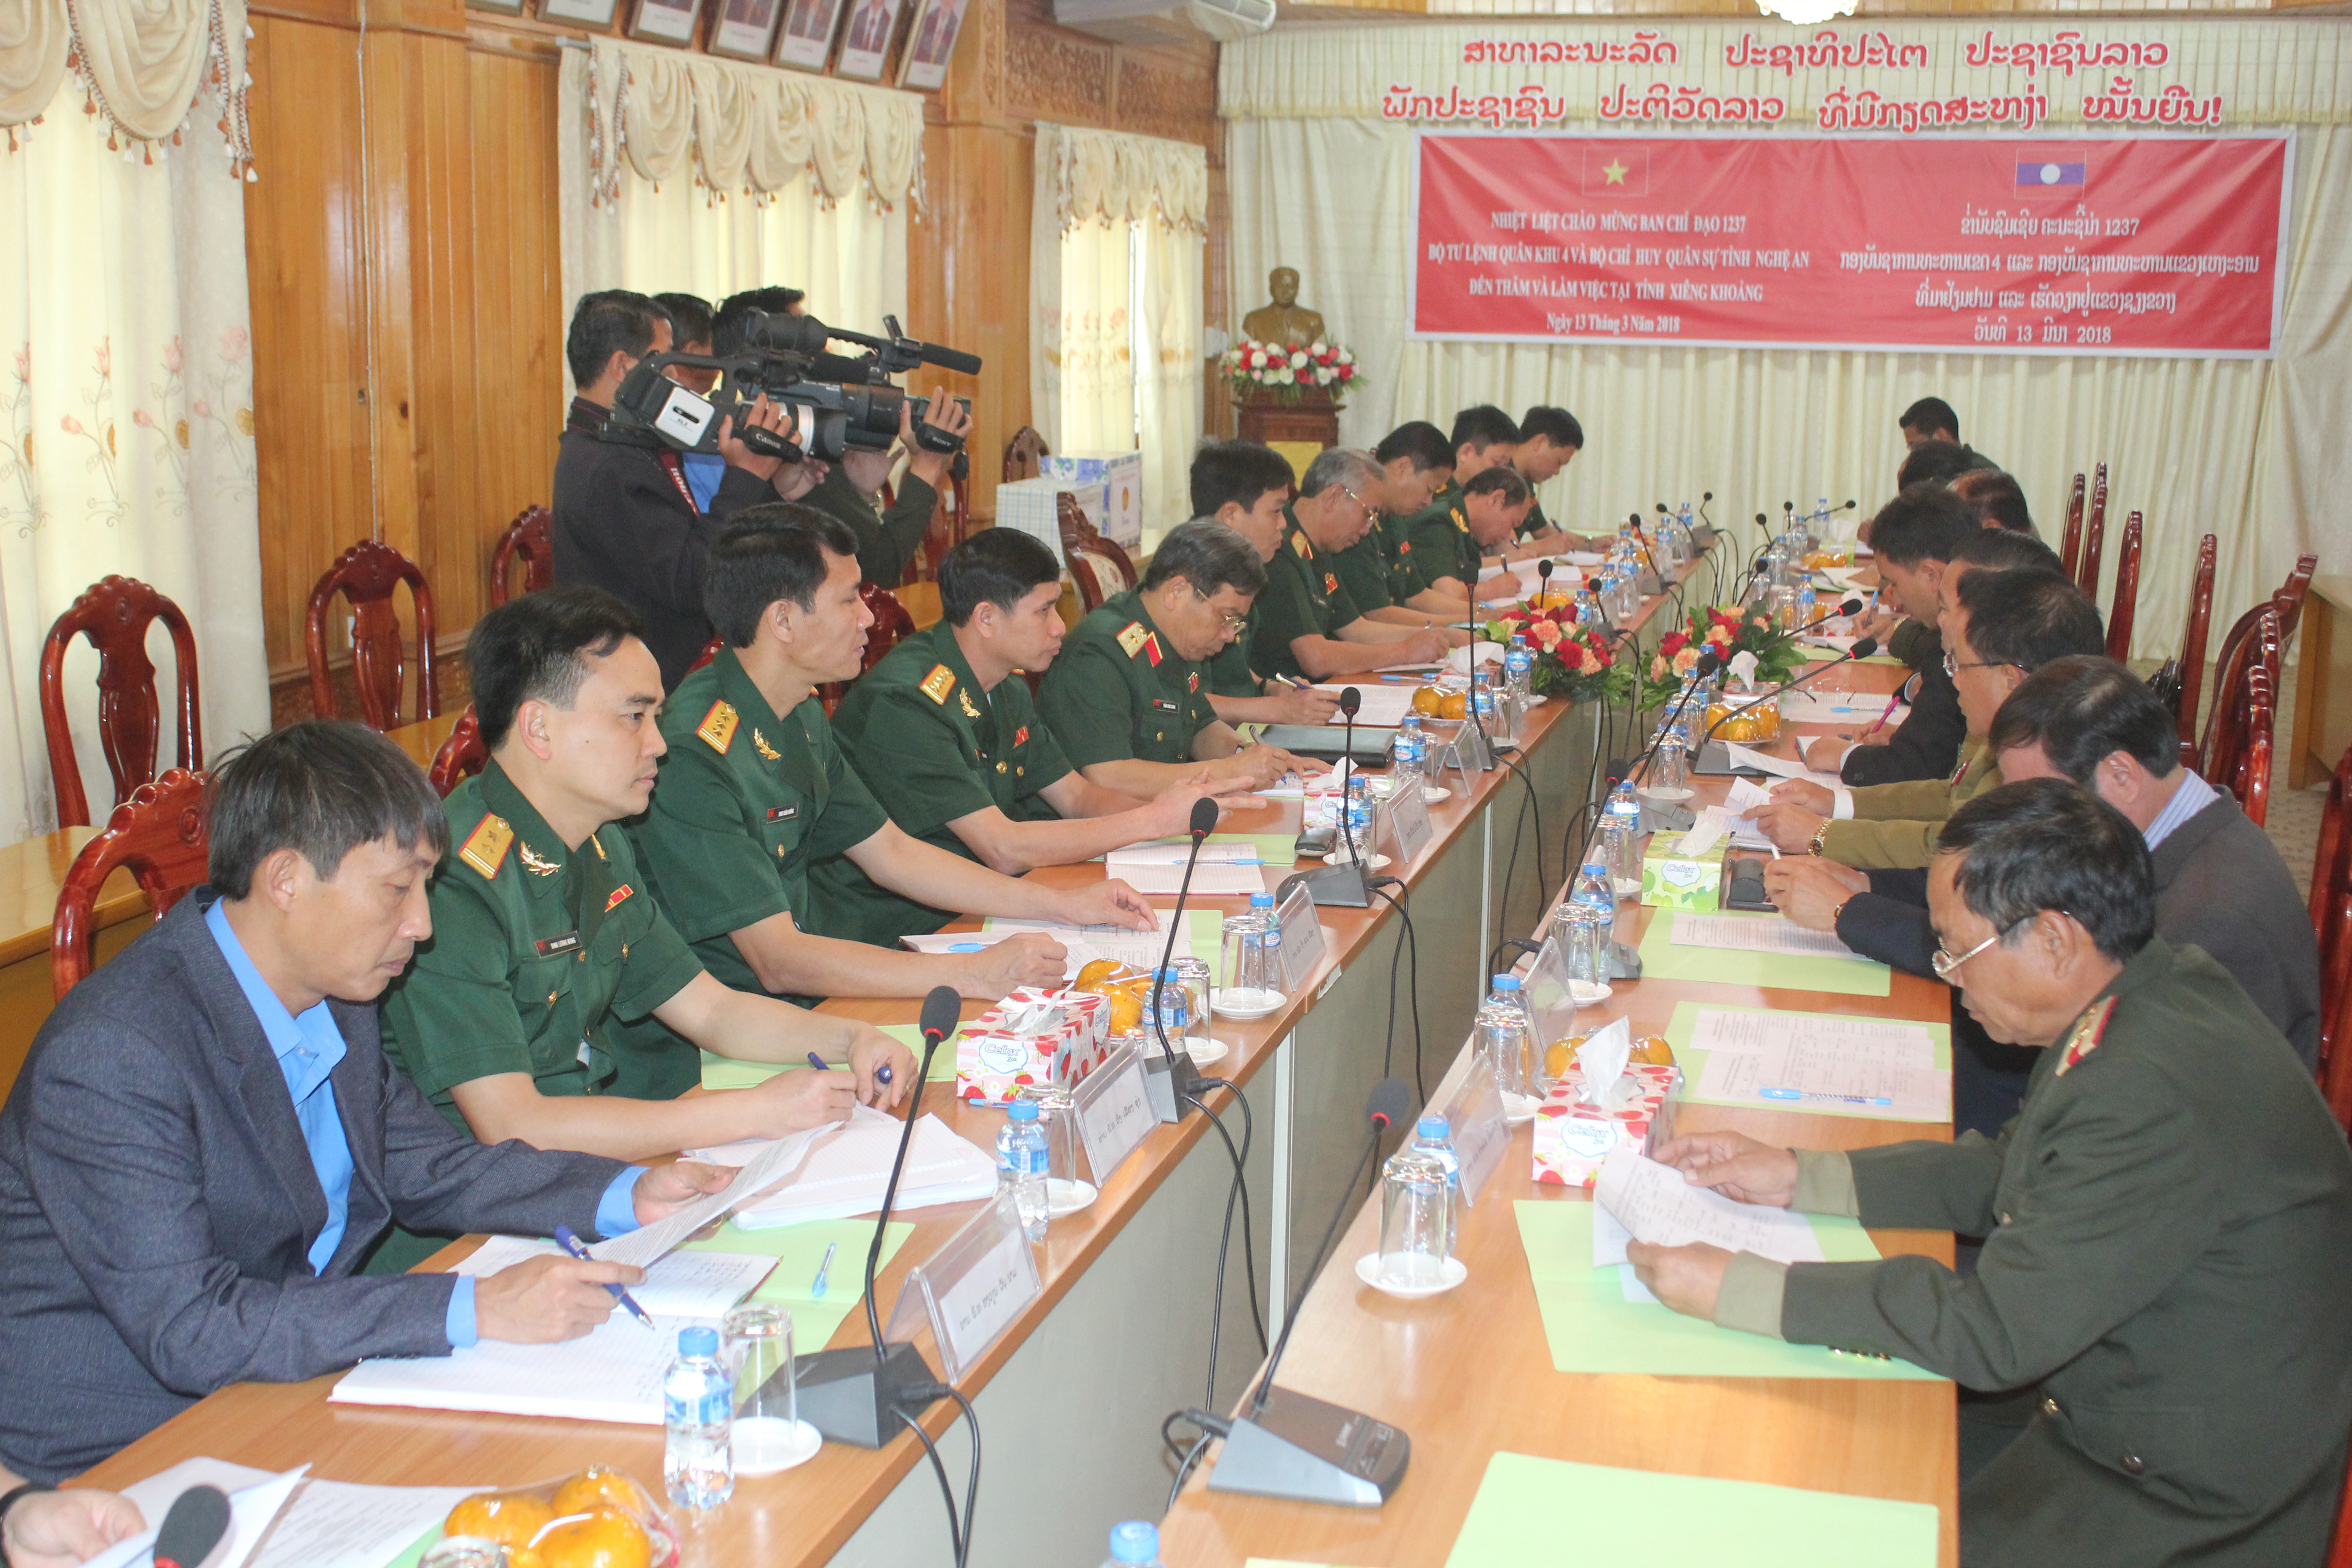 Ban chỉ đạo 1237 Quân khu kiểm tra các di vật liệt sỹ được Đội quy tập Bộ CHQS tỉnh Nghệ An tìm kiếm, cất bốc được trong màu khô 2017 - 2018. Ảnh: Trần Dũng